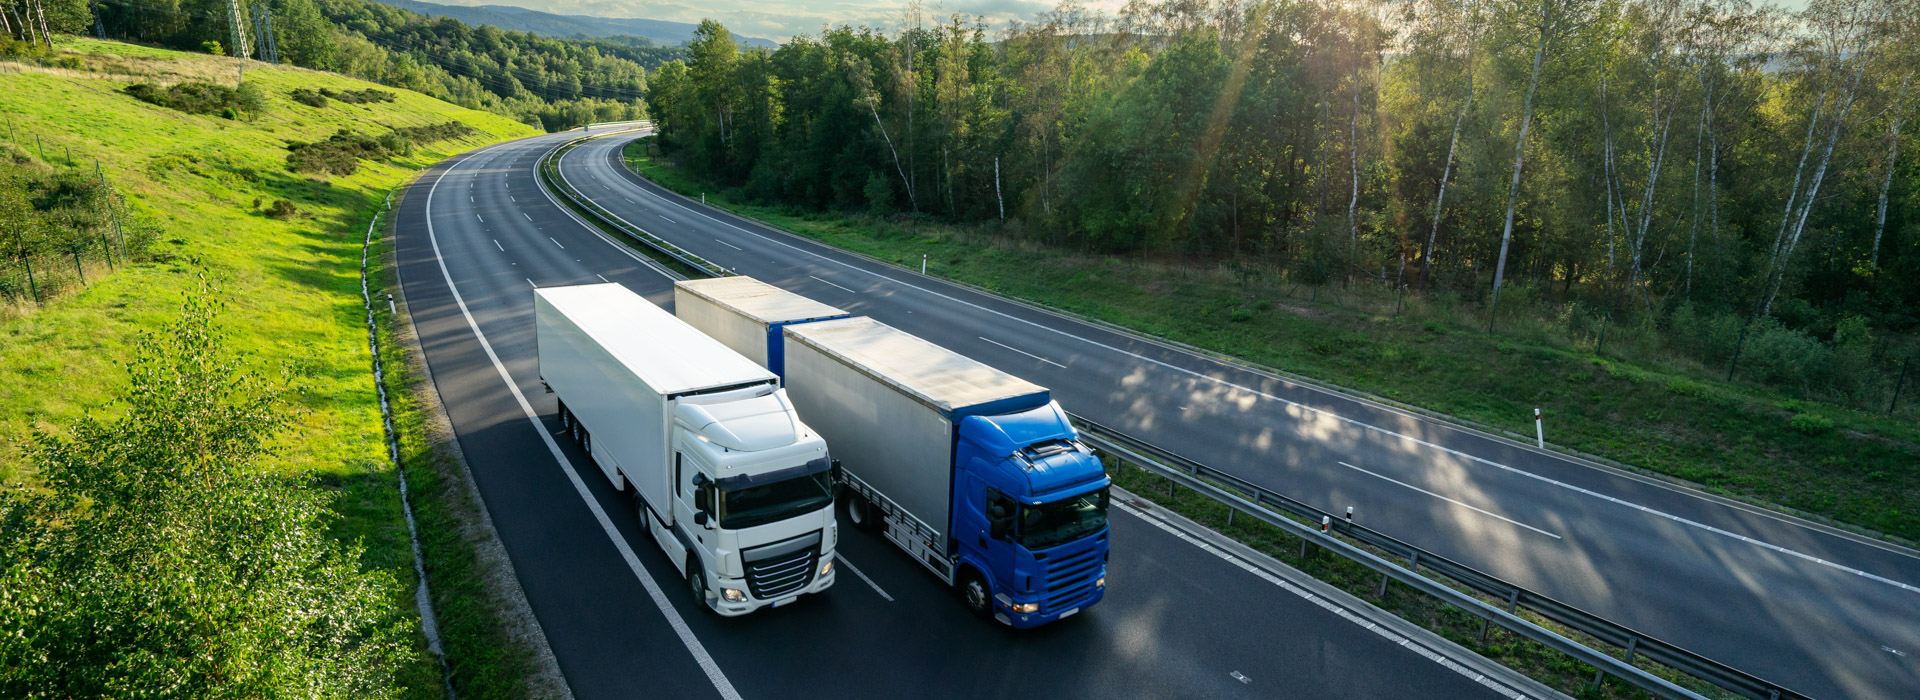 freteurope cj transporteur europe france espagne italie fret camion marchandises denrées périssables réfrigérée